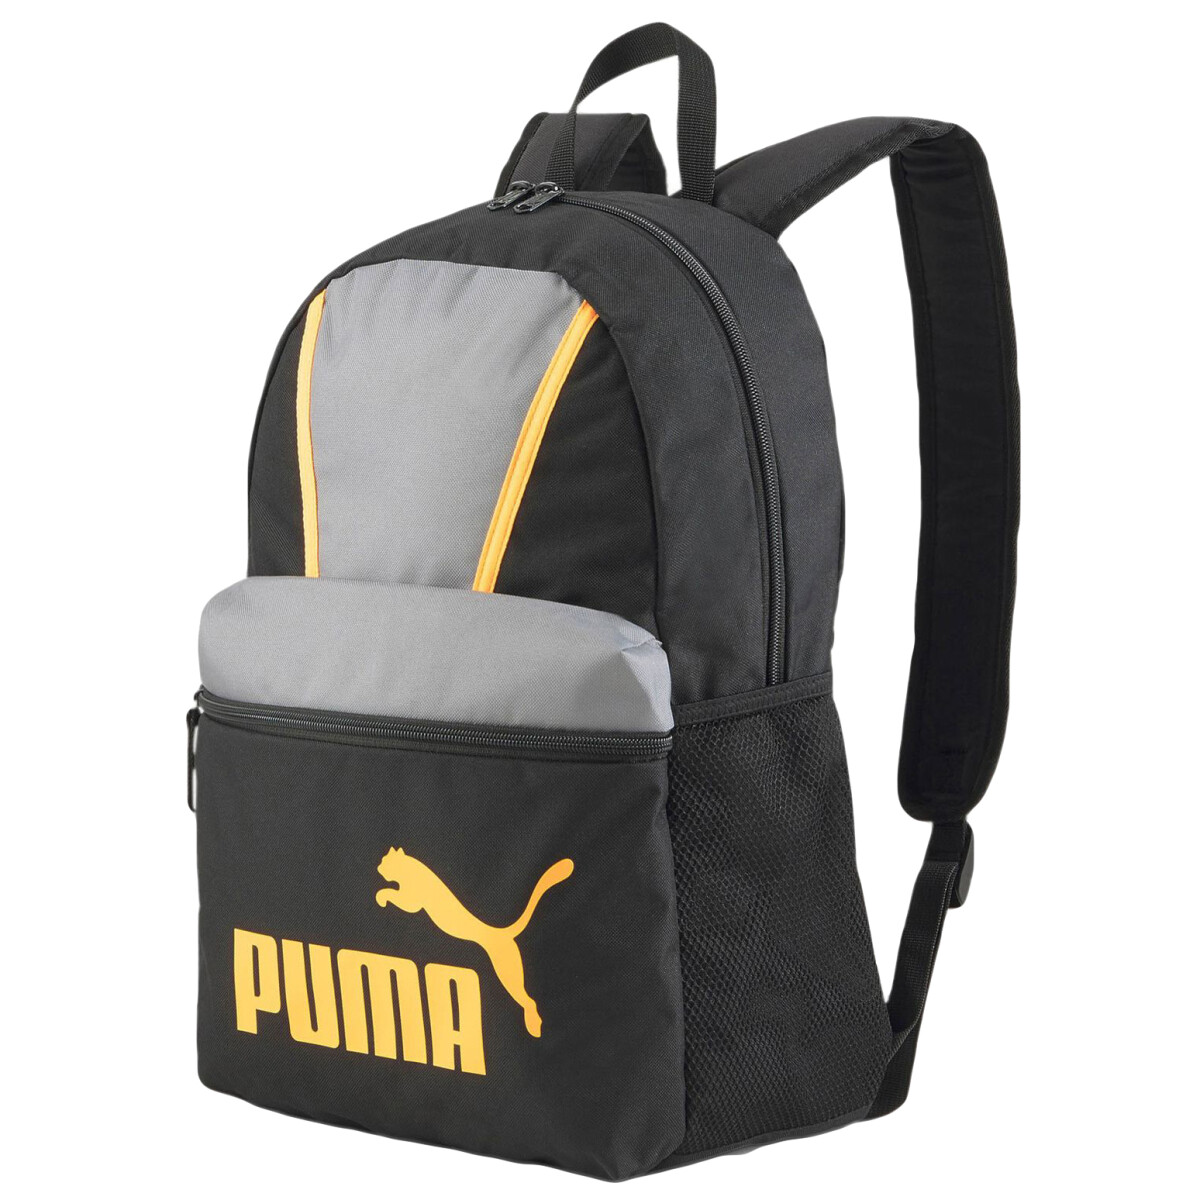 Mochila Phase Blocking Backpack Puma - Negro/Gris/Naranja 